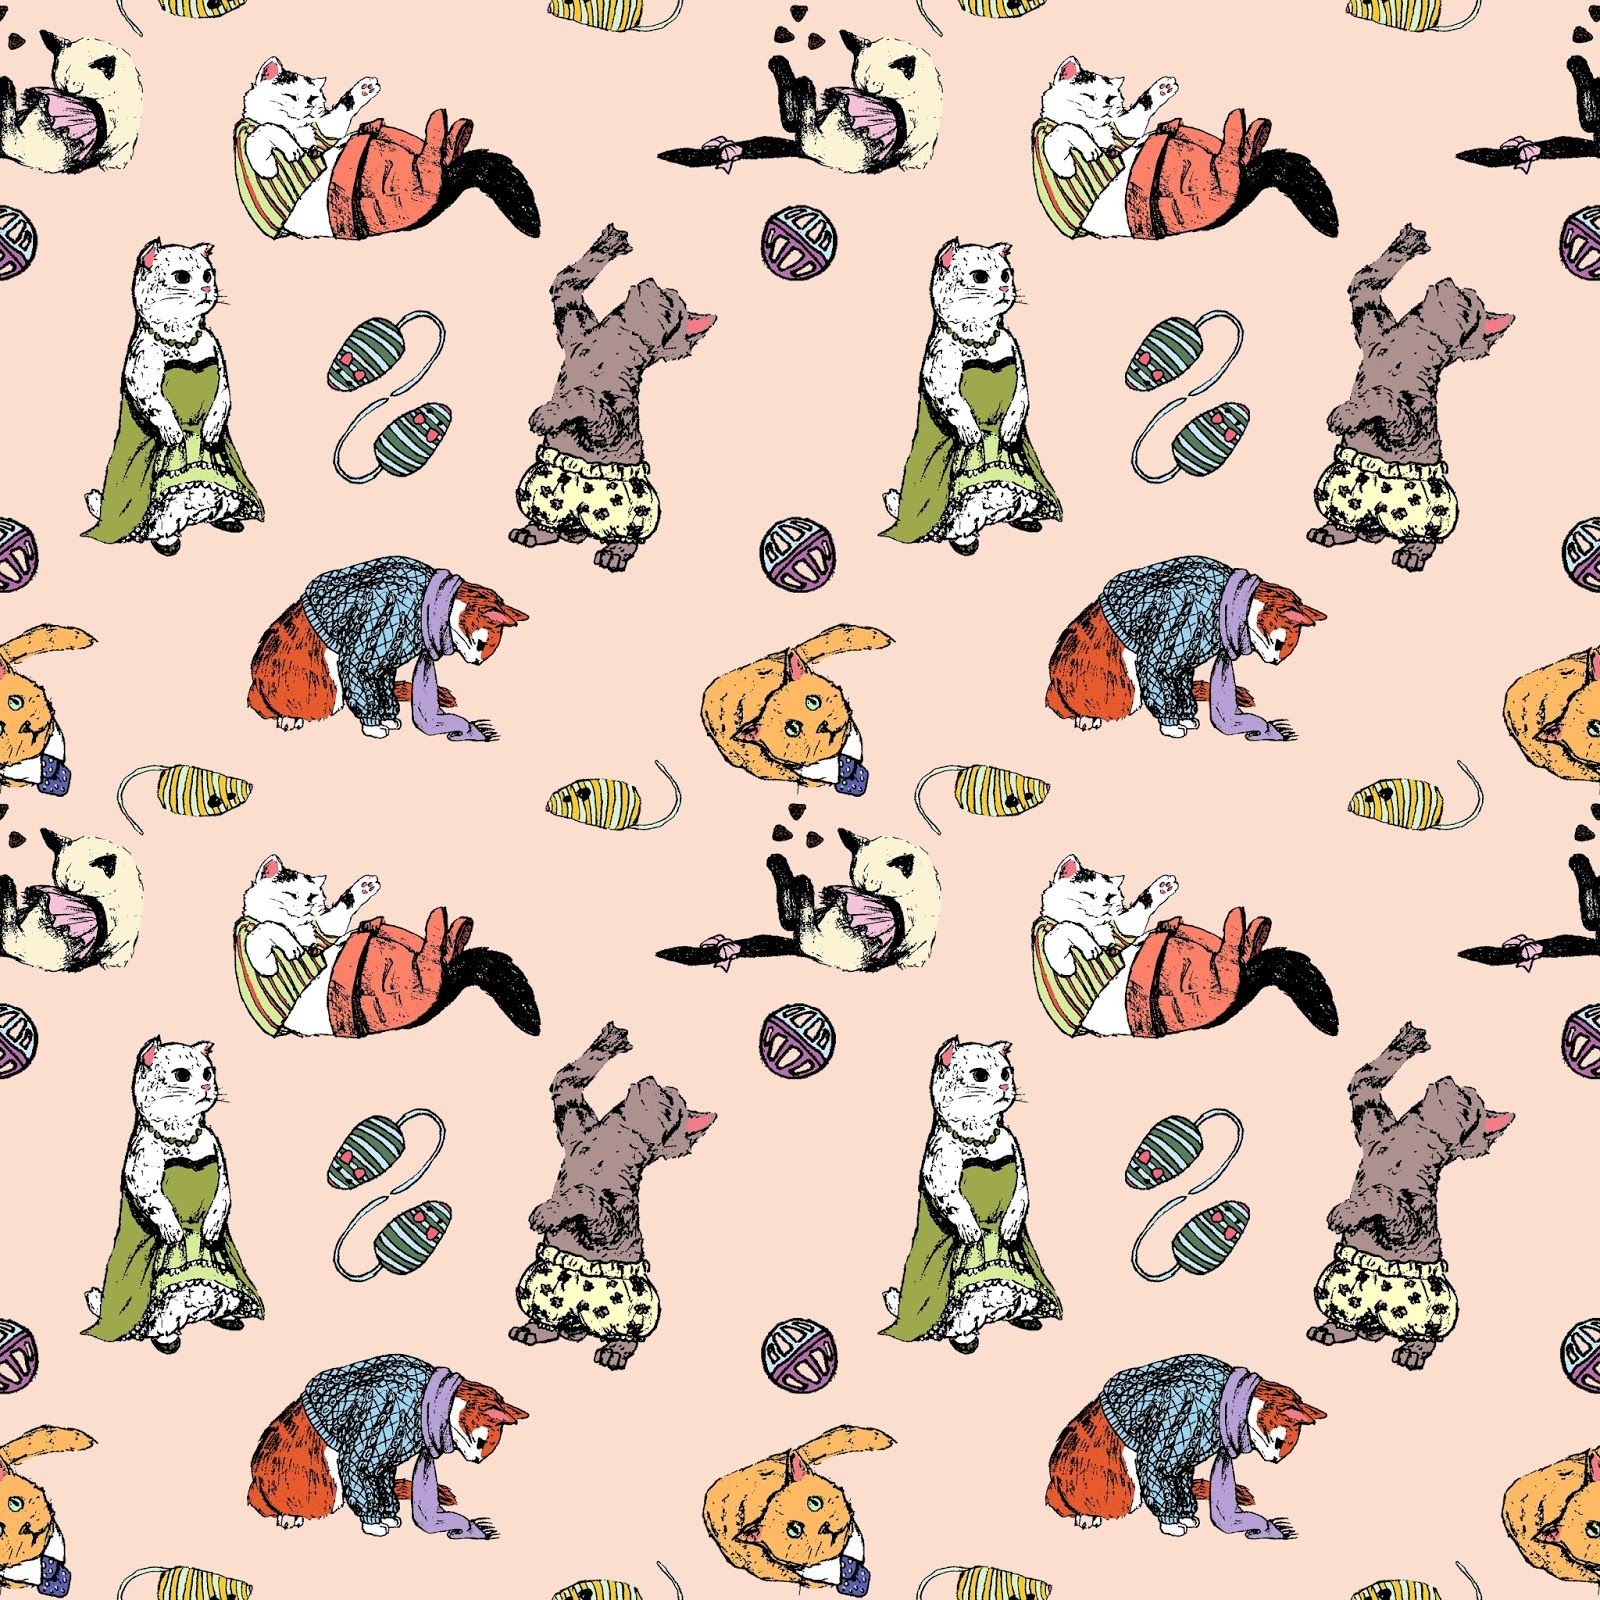 cat tumblr wallpapers